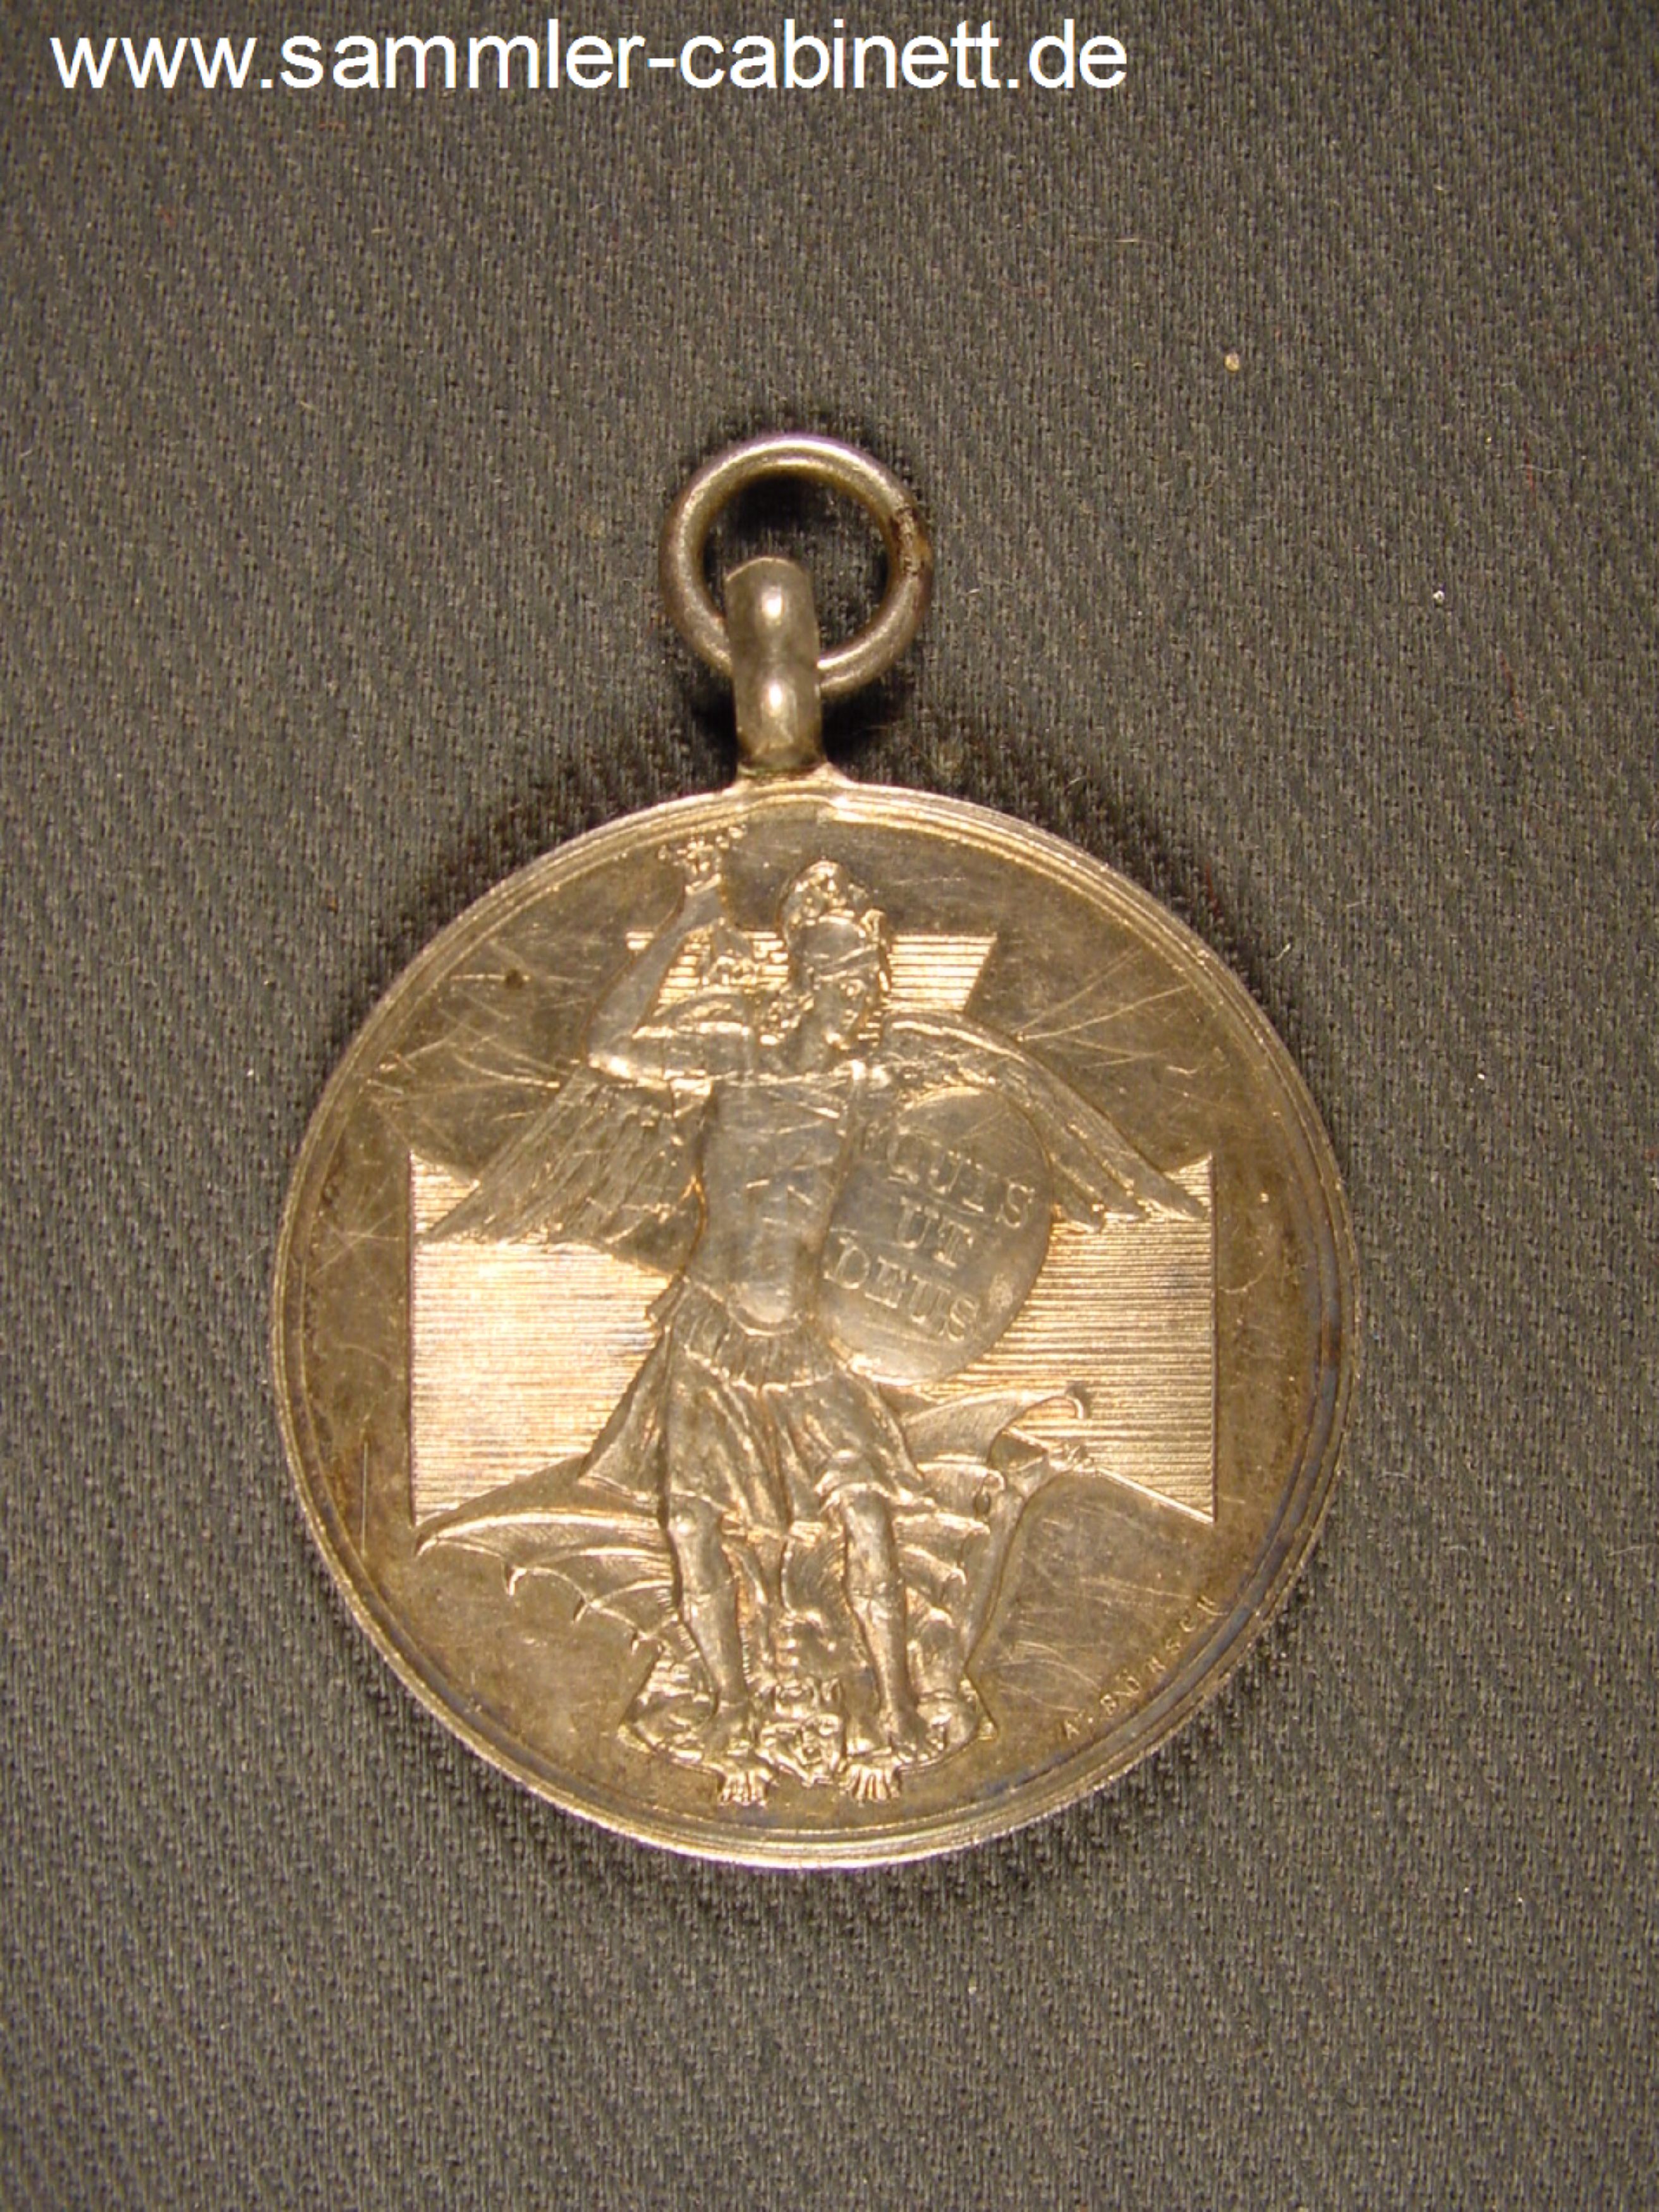 Orden von Hlg. Michael - silberne Medaille dieses Ordens...